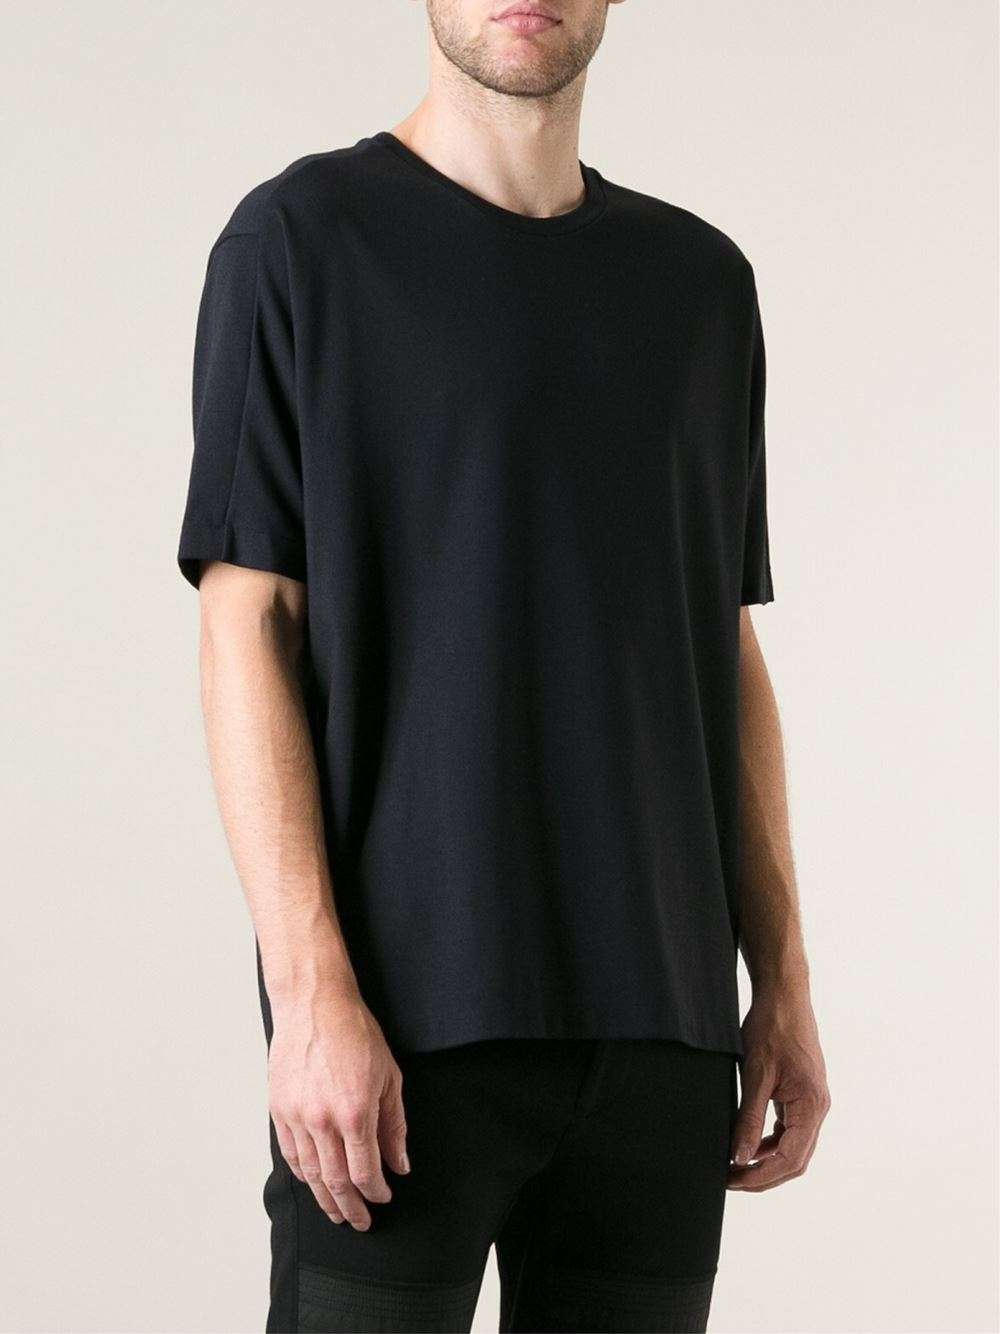 3.1 phillip lim Dolman Sleeve T-shirt in Black for Men | Lyst